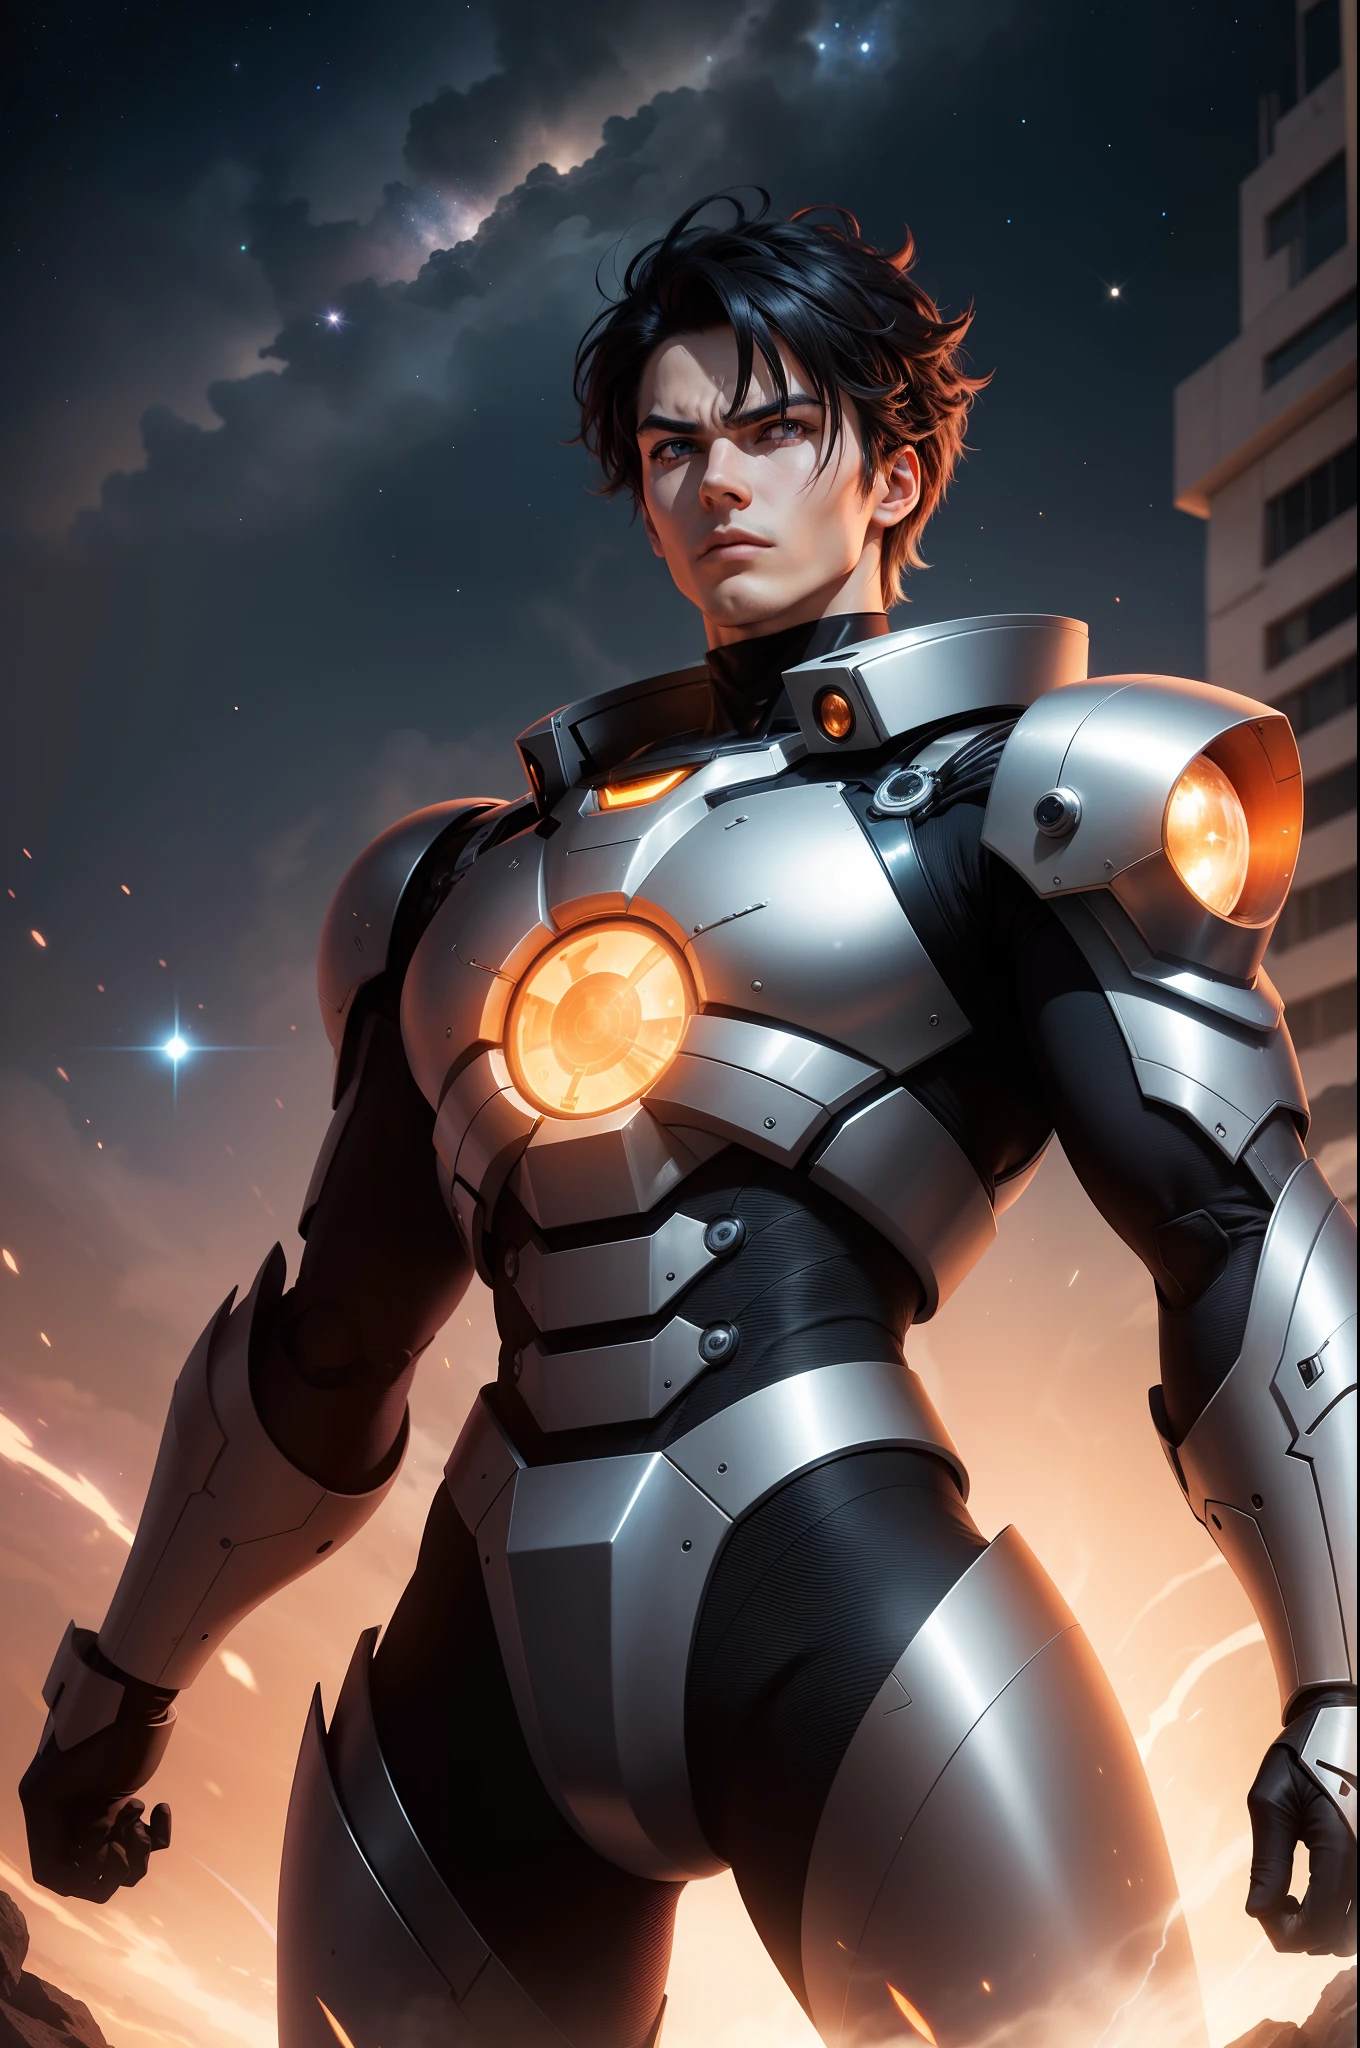 ——人物形象: 賈斯皮恩·賈斯皮恩是一位無所畏懼的星際英雄，以其閃亮的銀色盔甲和勇敢的態度而聞名. 他堅定的目光反映出他致力於保護銀河系免受邪惡威脅的奉獻精神. 他的黑髮和嚴肅的表情顯示出他為正義而戰的堅定決心.

——Daileon機器人在後台, 威風凜凜的 Daileon 機器人崛起為巨型守護者. 其金屬結構具有空氣動力學線條和複雜的技術細節. 戴利恩的發光眼睛發出強烈的光芒, 表明他的力量和權力. 他穩健的雙手握著先進的武器, 準備好與賈斯皮恩一起捍衛正義.

--太空場景場景發生在浩瀚的外太空之中, 閃爍的星星和色彩繽紛的星雲點綴著黑暗的背景. Jaspion 和 Daileon 位於金屬平台上, 準備好開始一項史詩般的新使命，對抗威脅銀河和平的邪惡勢力.

--冒險氛圍 影像捕捉了星際冒險的精髓, 傳達英雄主義和決心感. 英雄傑斯皮恩 (Jaspion) 與強大的機器人戴利昂 (Daileon) 的結合創造了一個令人印象深刻的場景，喚起人們的行動感, 宇宙中史詩般戰鬥的情感和承諾.